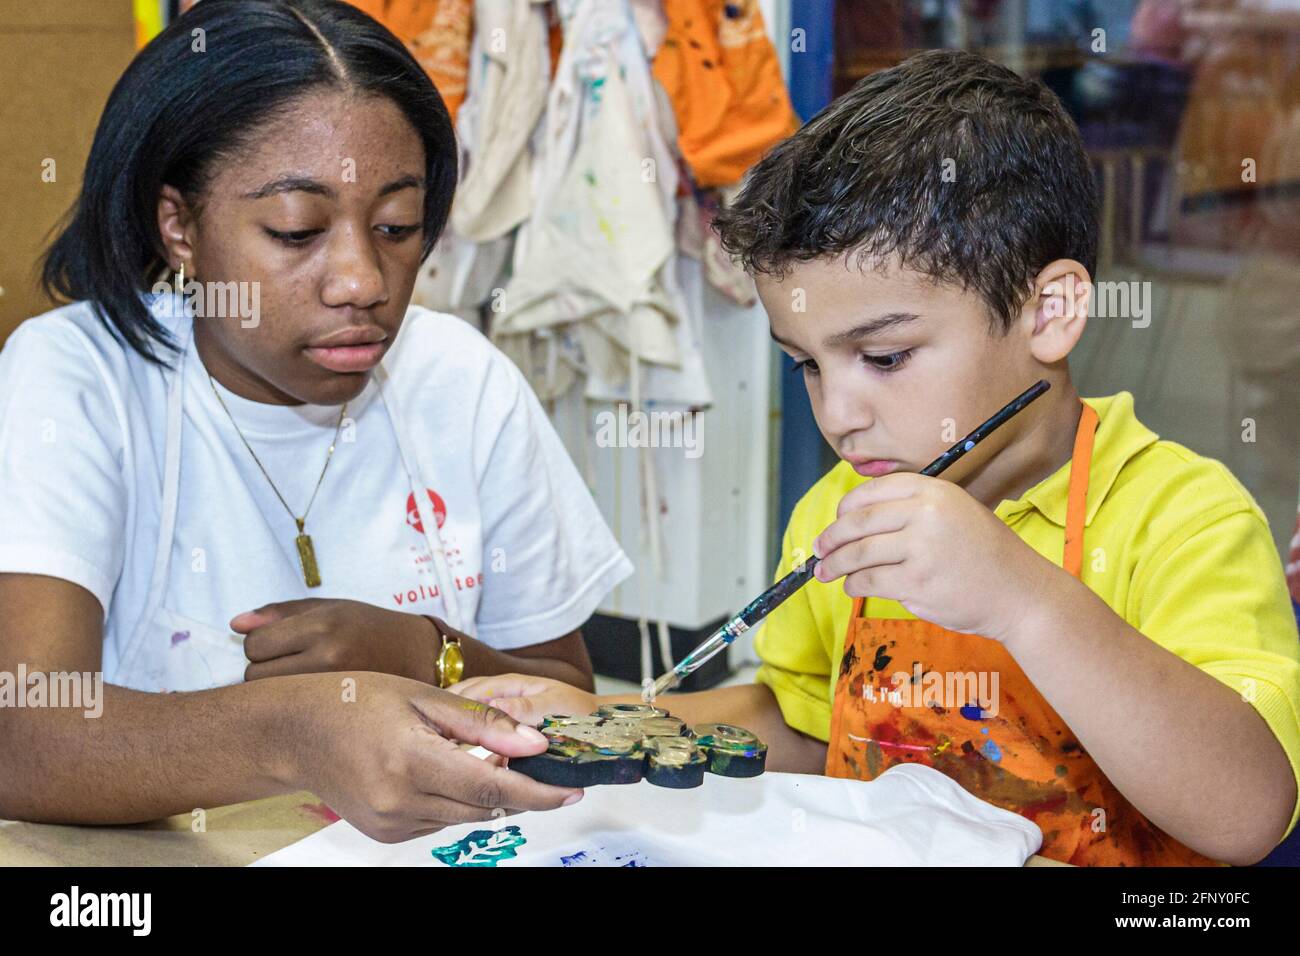 Miami Florida, Museo de los Niños camiseta taller de decoración, niño hispano niño niño pintura negro niña mujer, adolescente adolescente adolescente adolescente estudiante voluntario Foto de stock